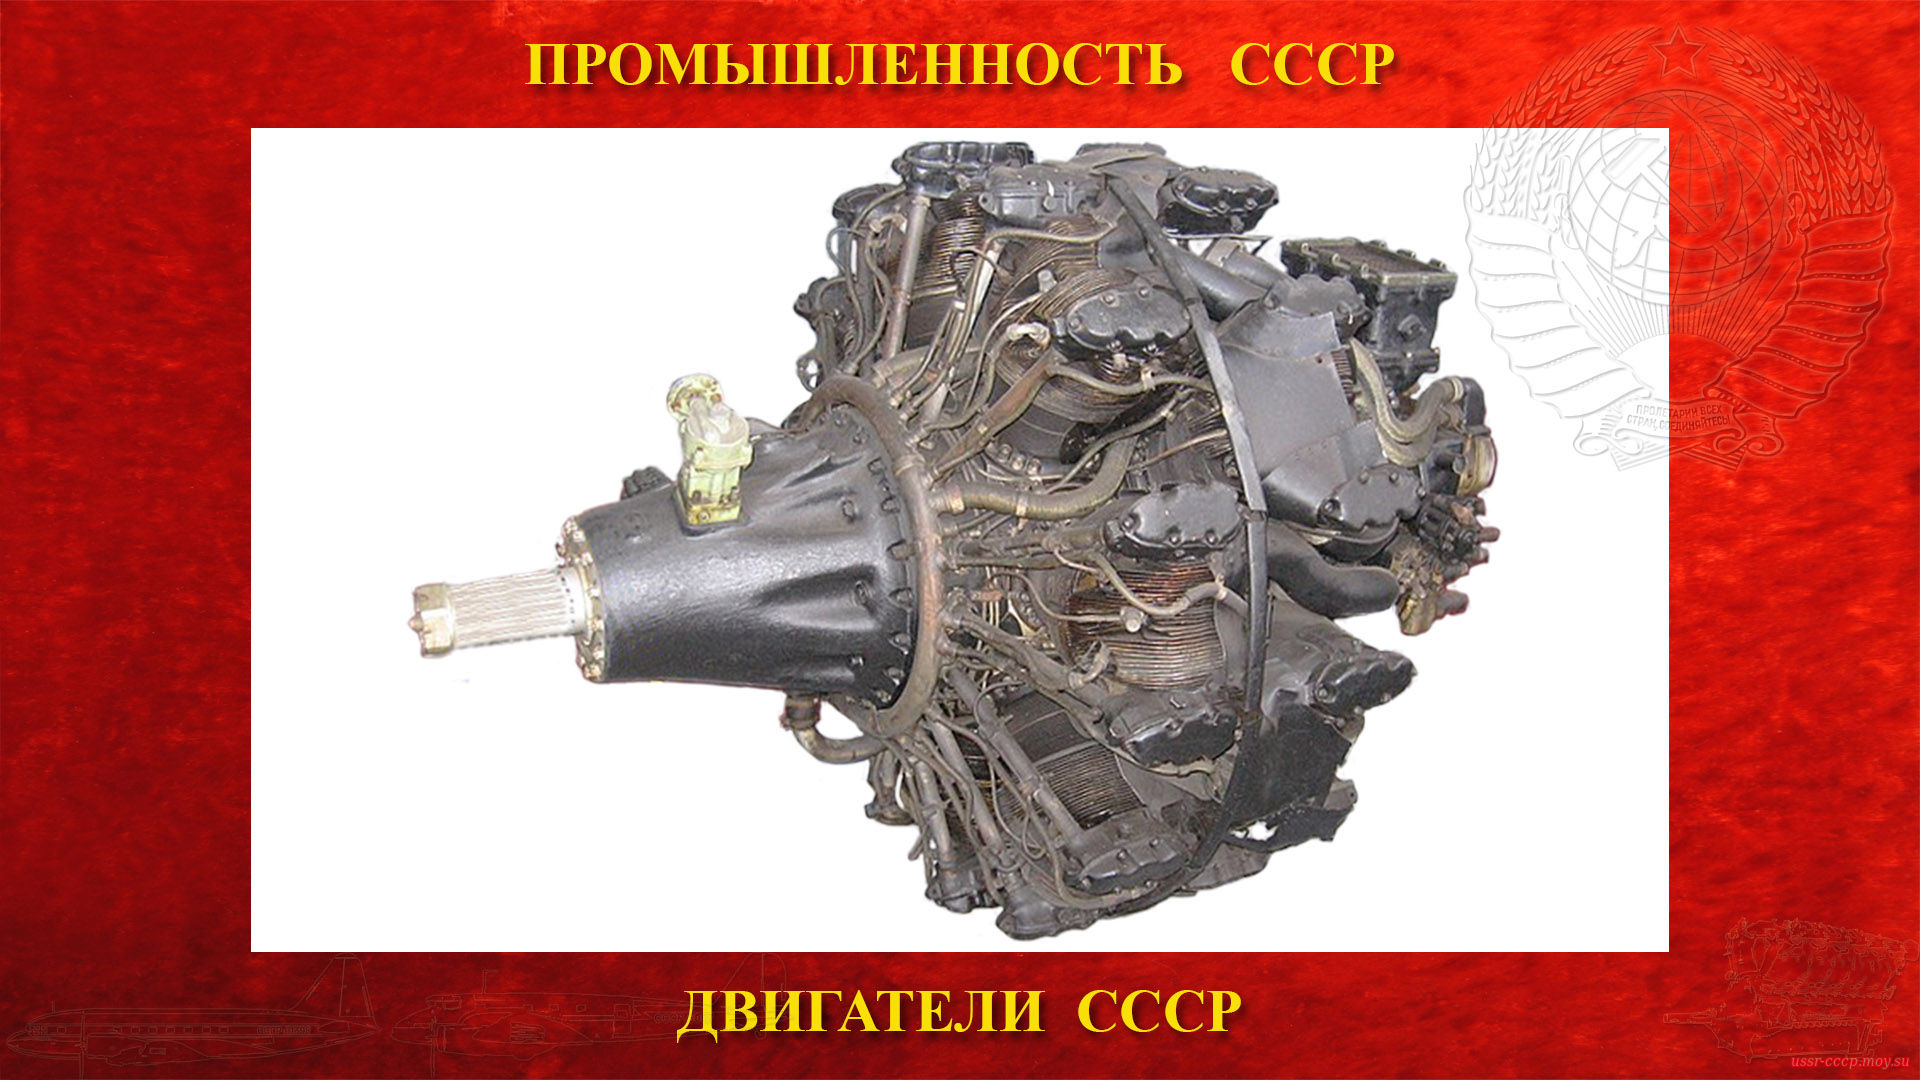 АШ-82 — Советский авиационный поршневой двигатель СССР